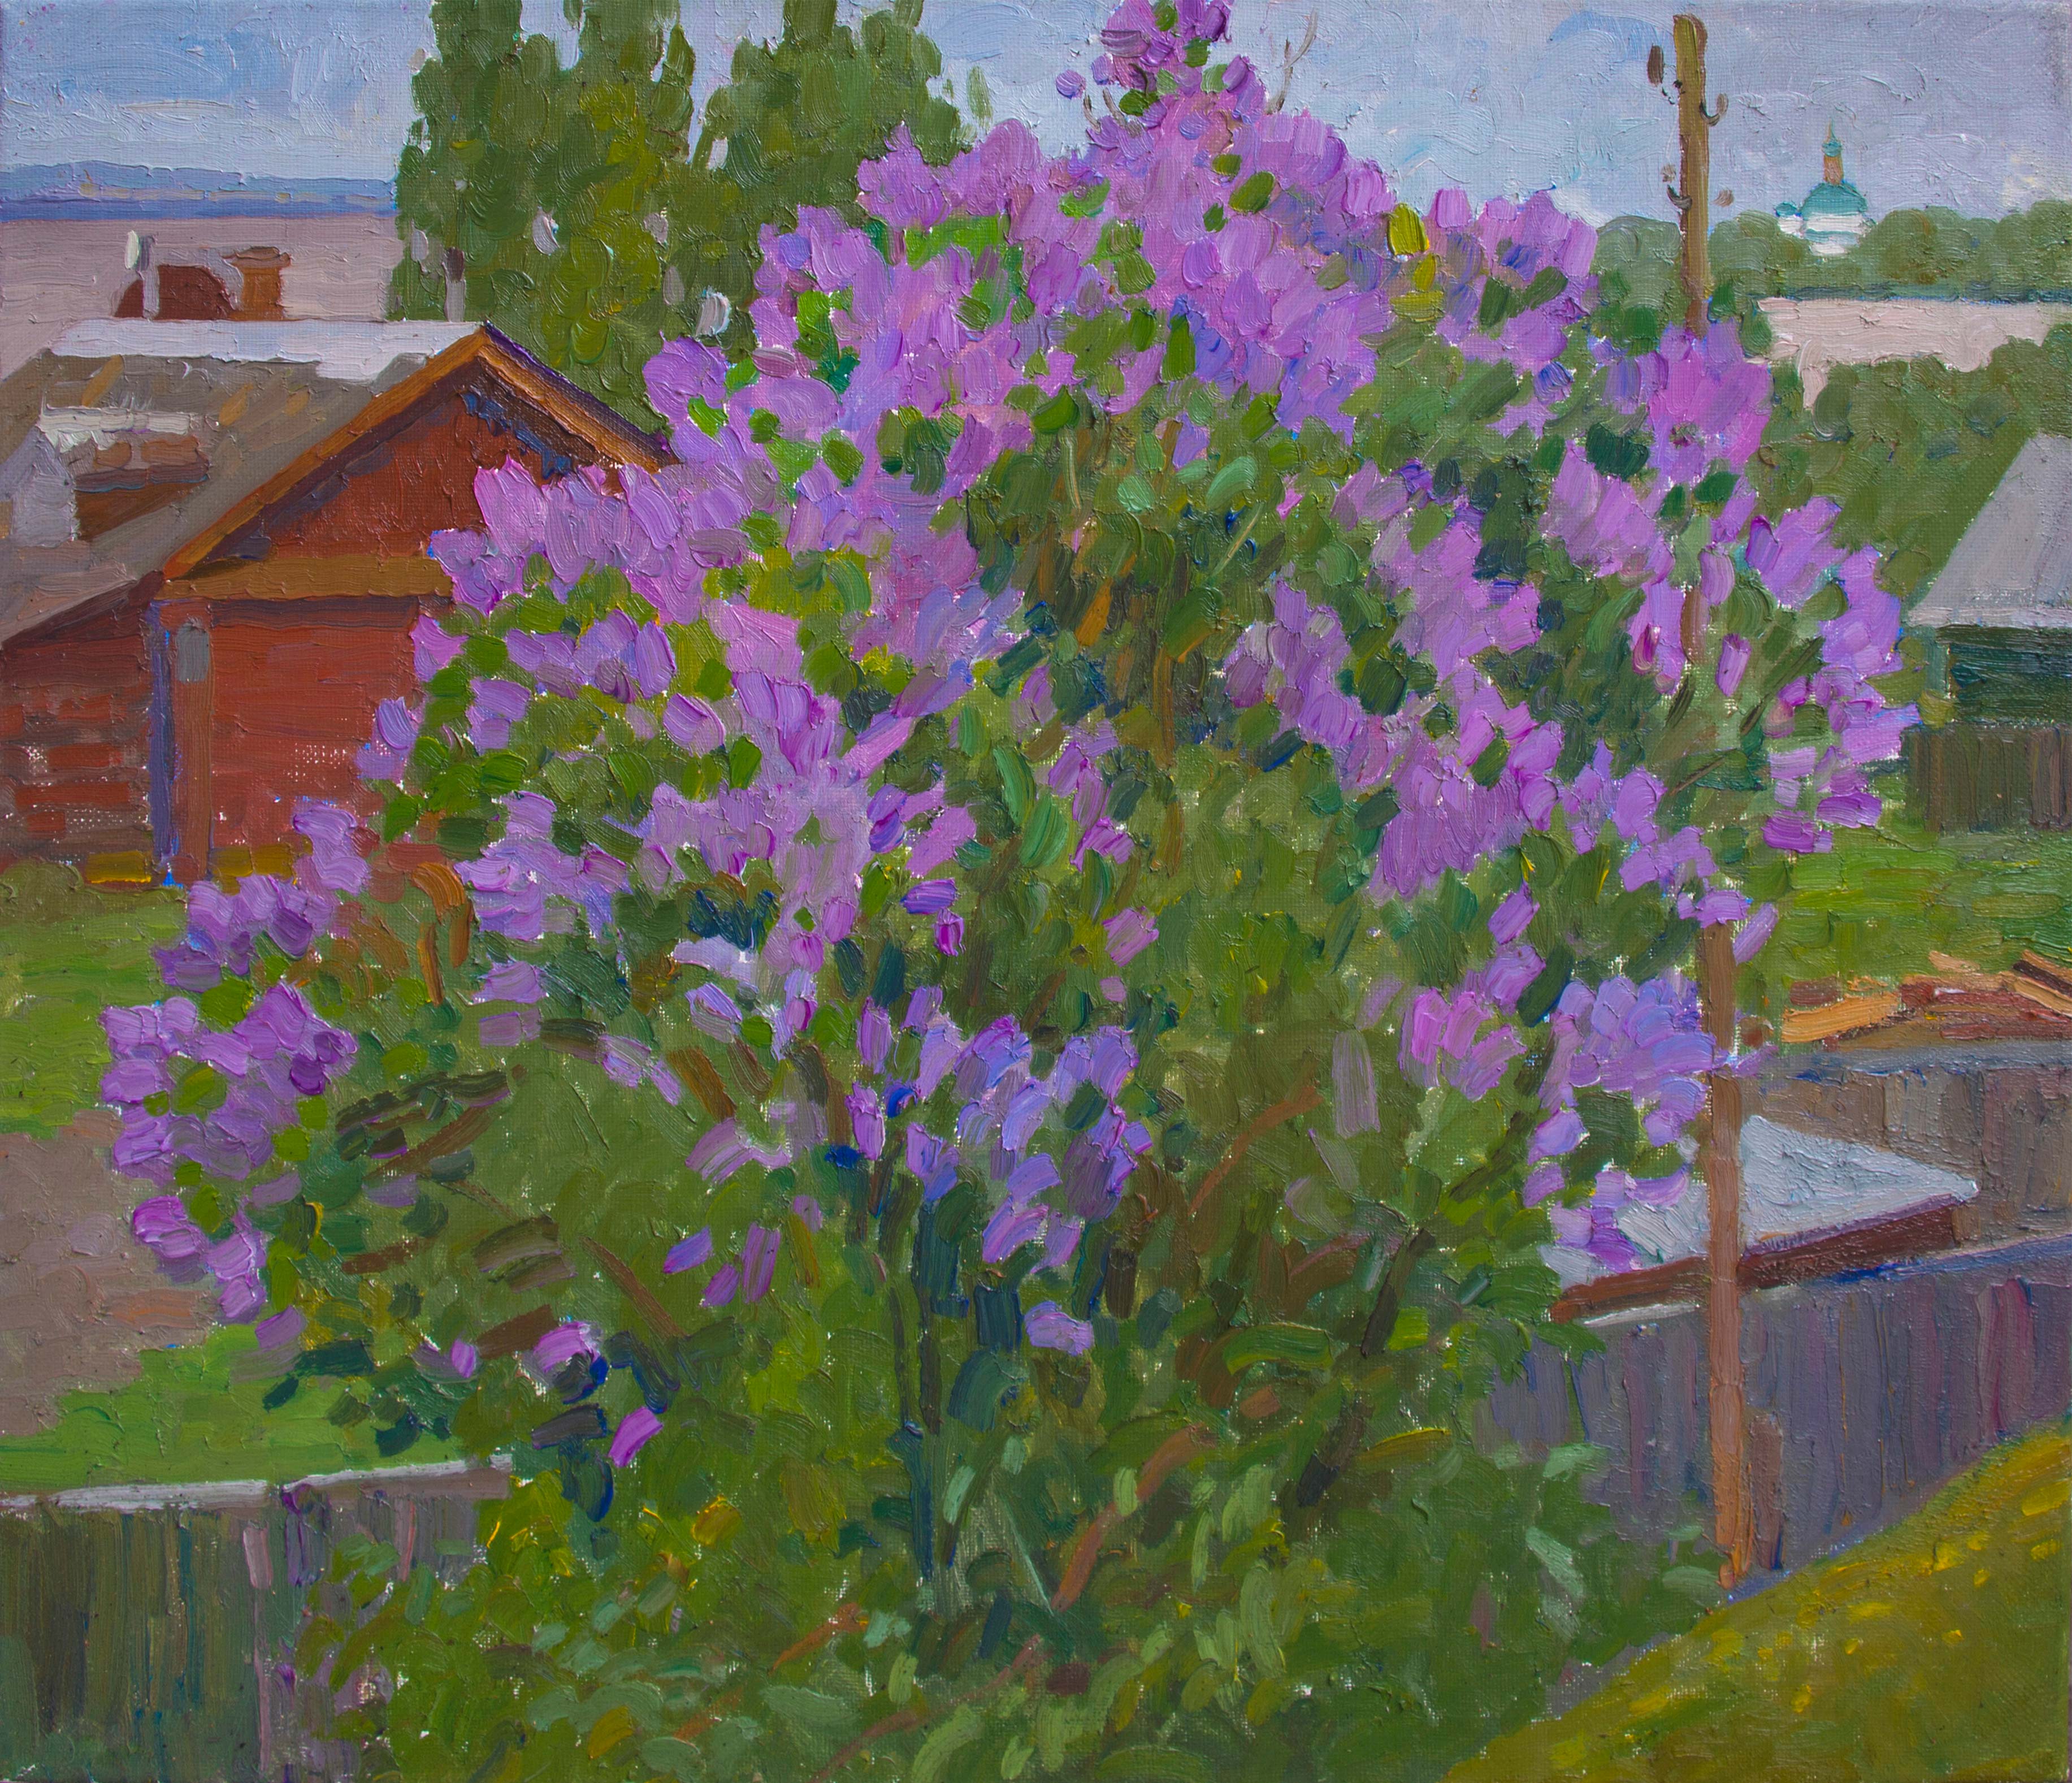 Lilac Bush - 1, Anastasia Nesterova, Buy the painting Oil